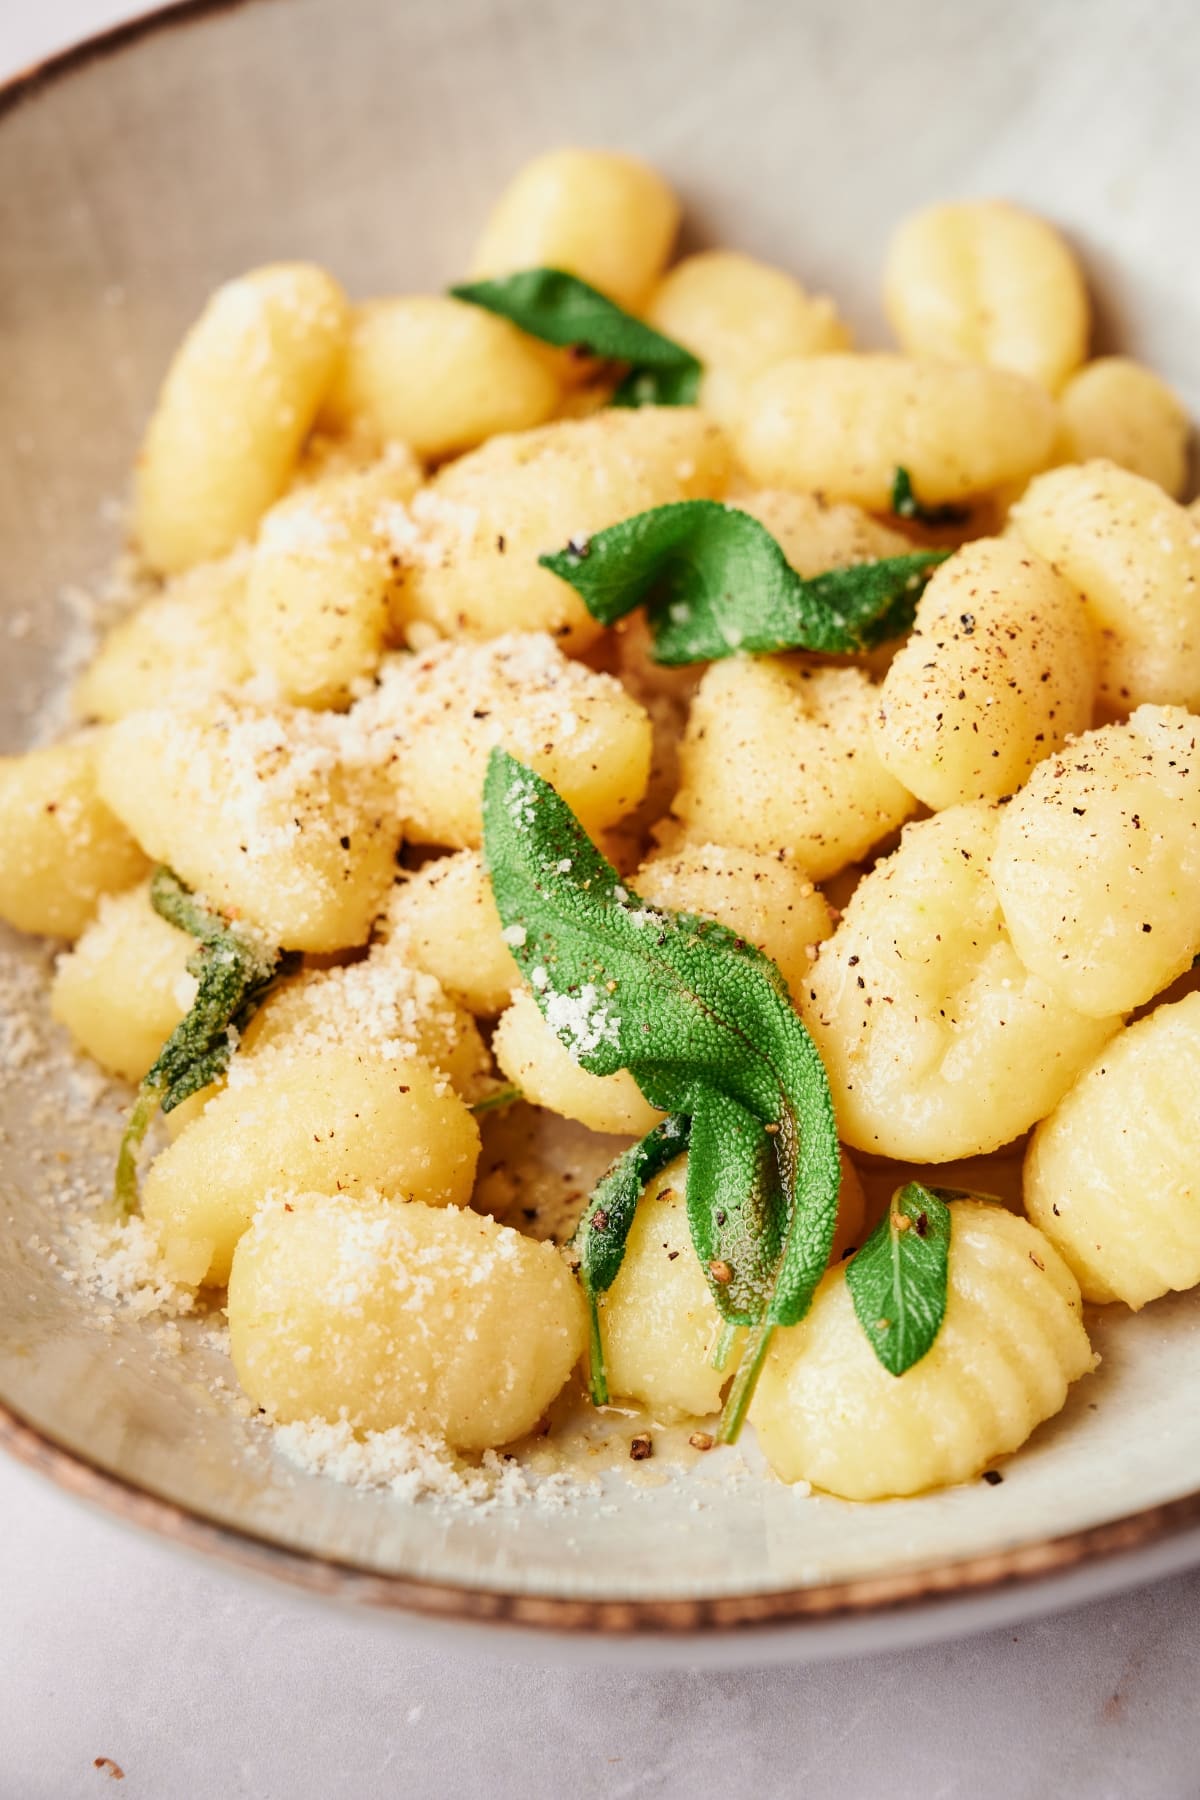 a plate of homemade potato gnocchi